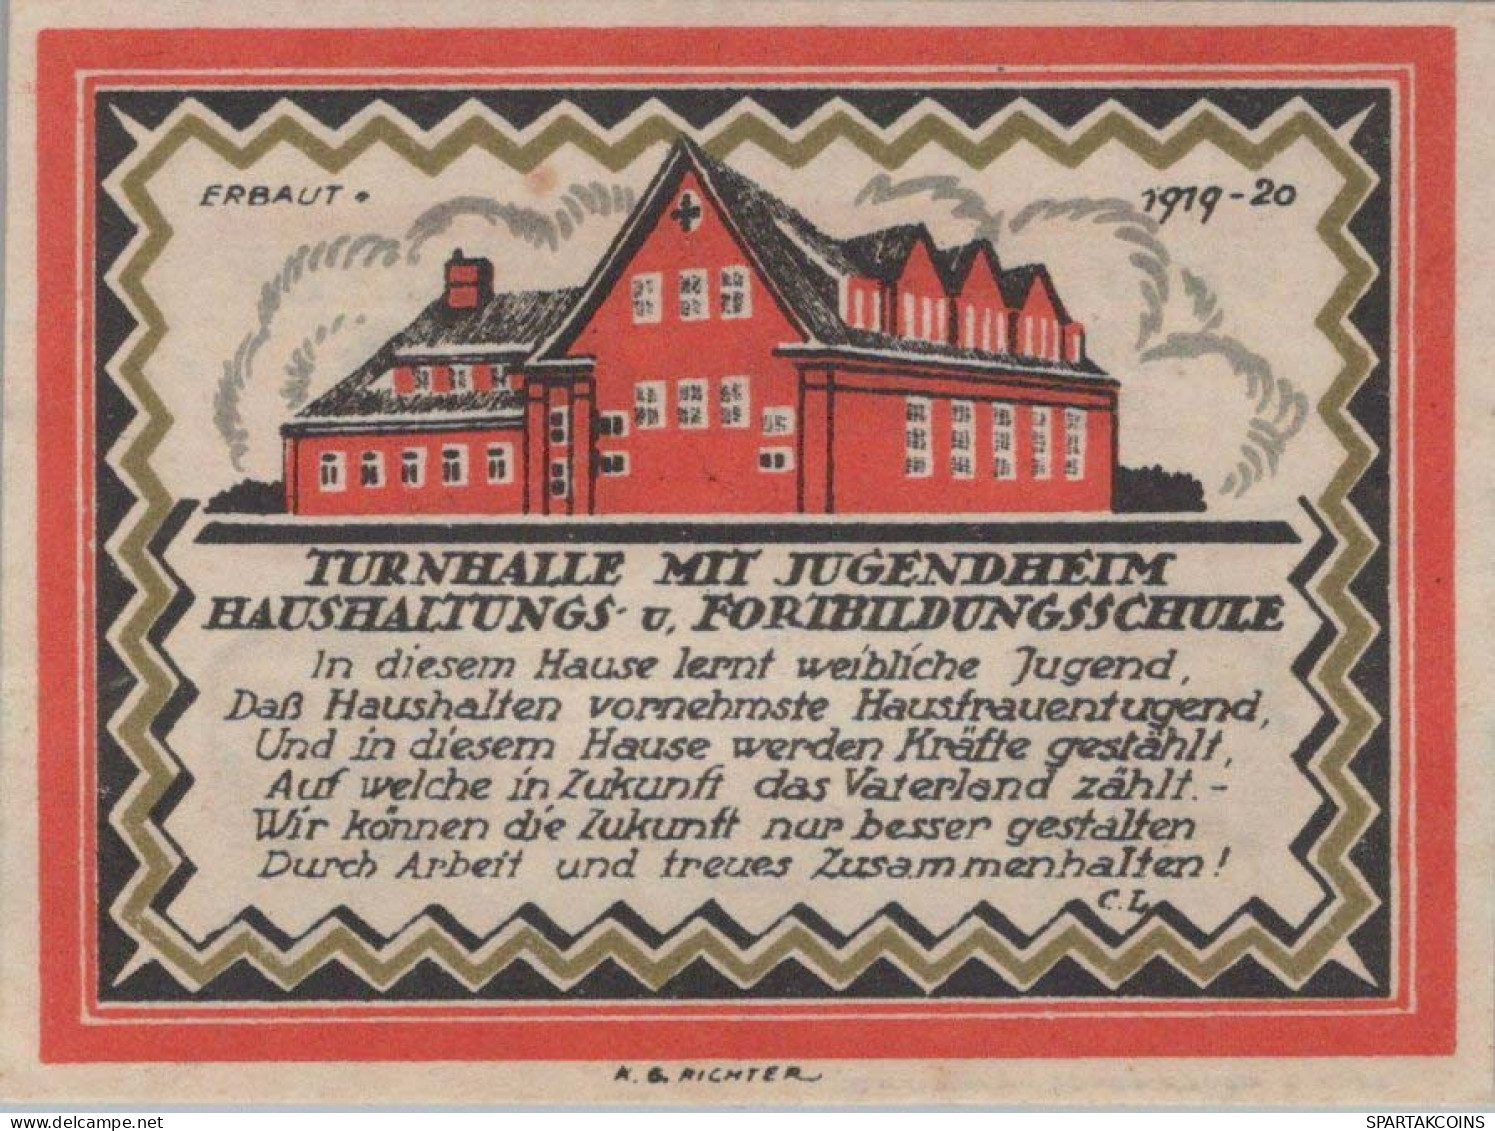 75 PFENNIG 1921 Stadt BÜDELSDORF Schleswig-Holstein UNC DEUTSCHLAND #PA317 - [11] Emisiones Locales